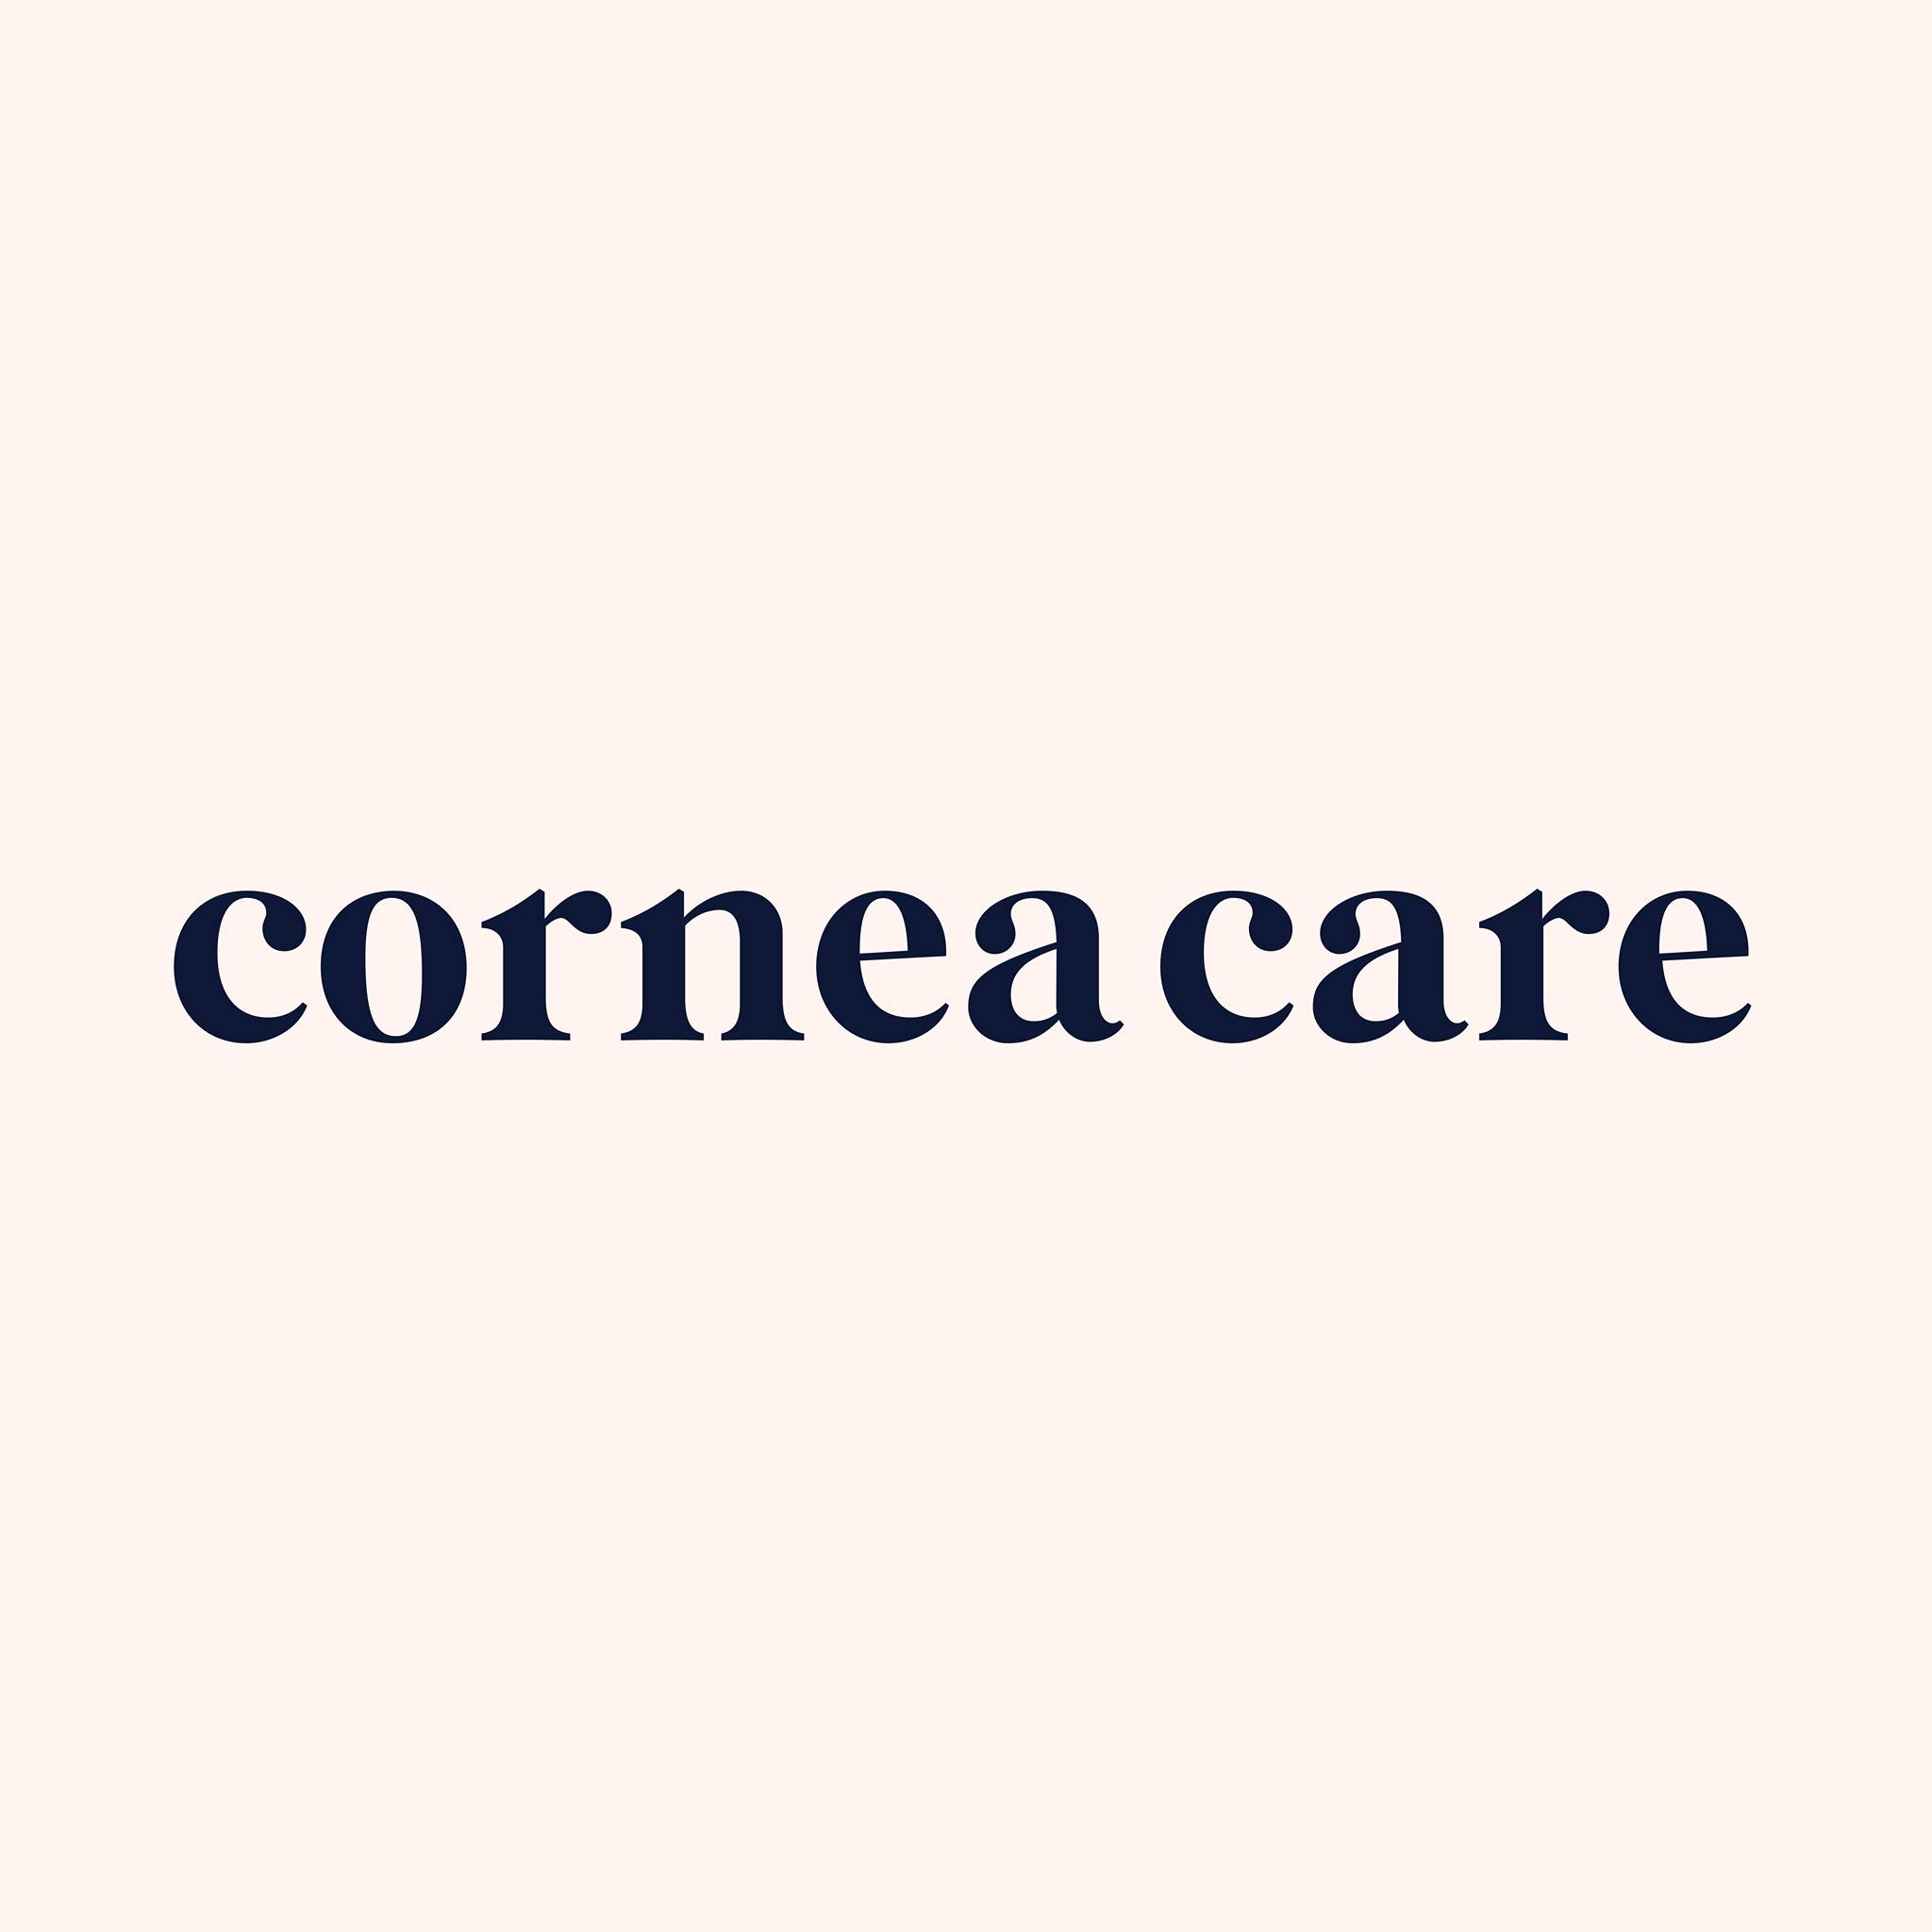 Cornea Care's Logo